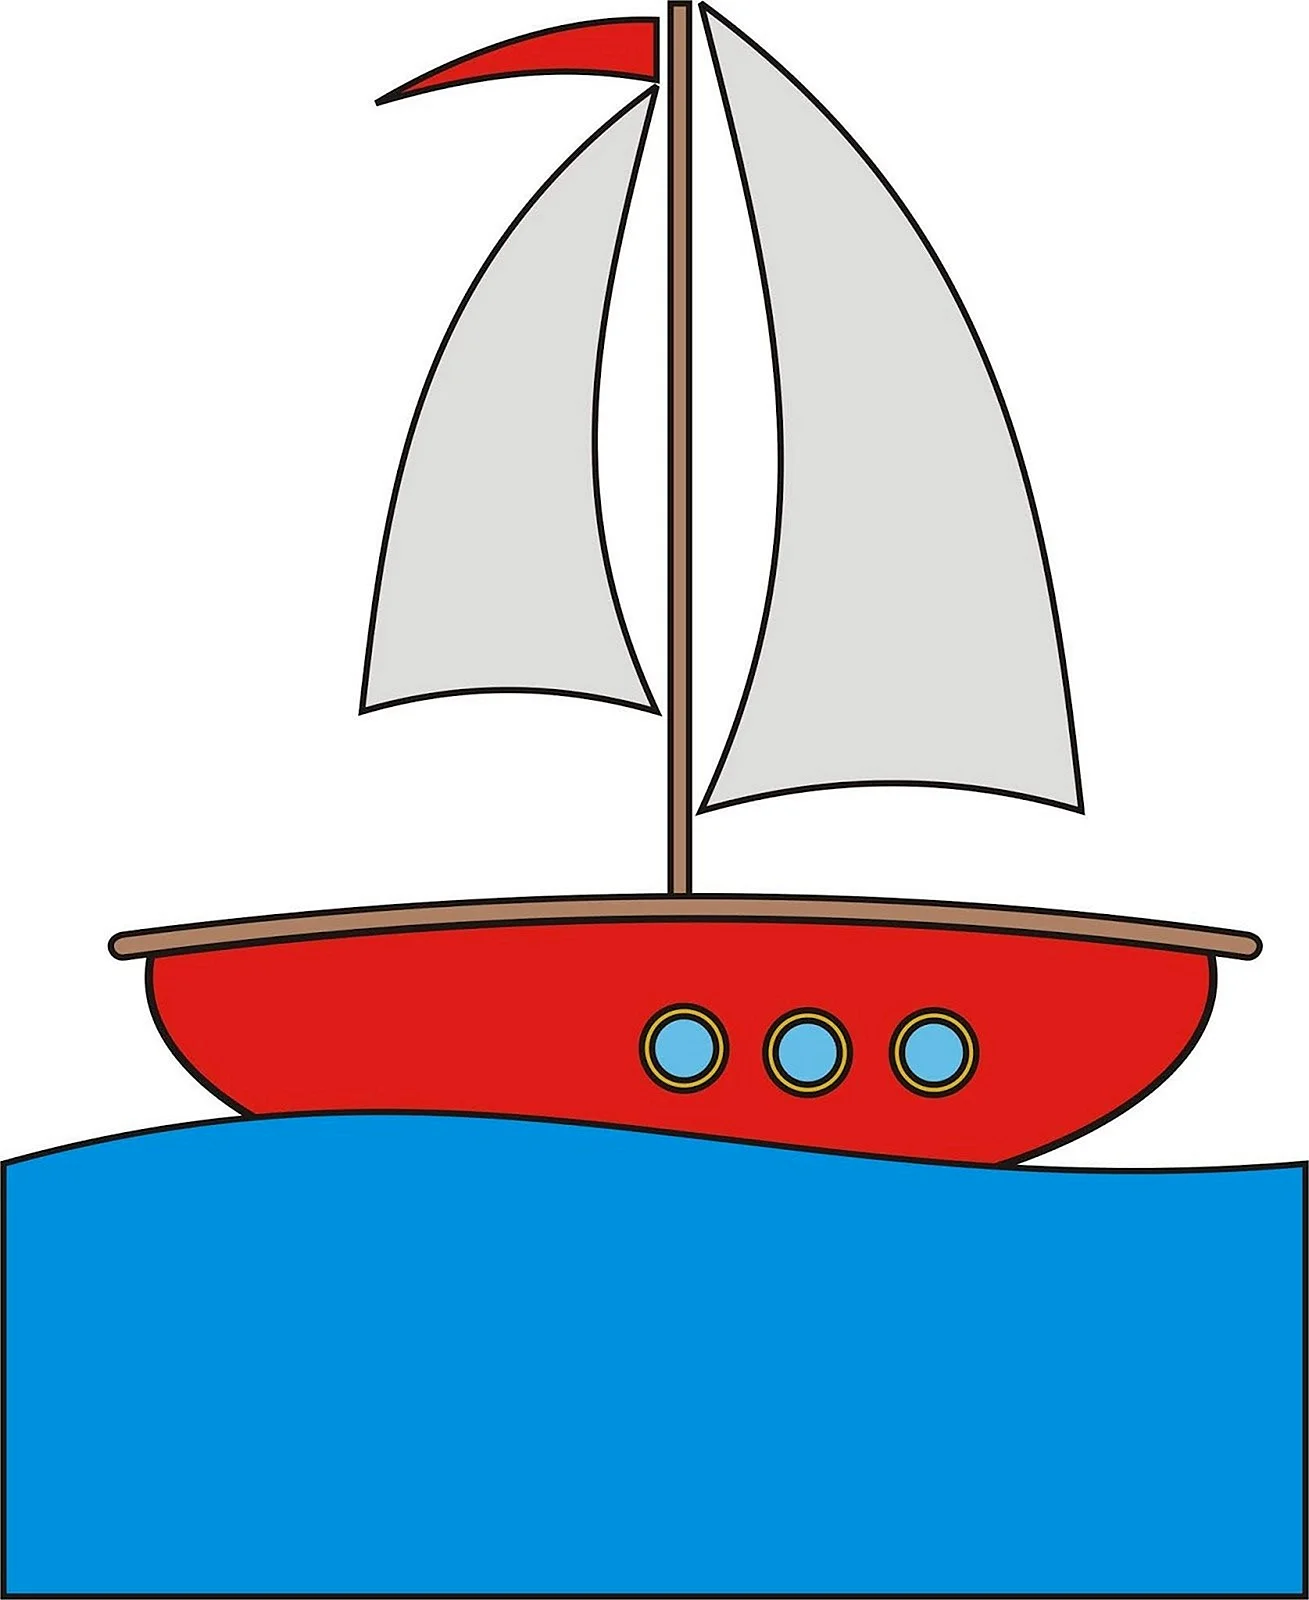 Кораблик картинка для детей